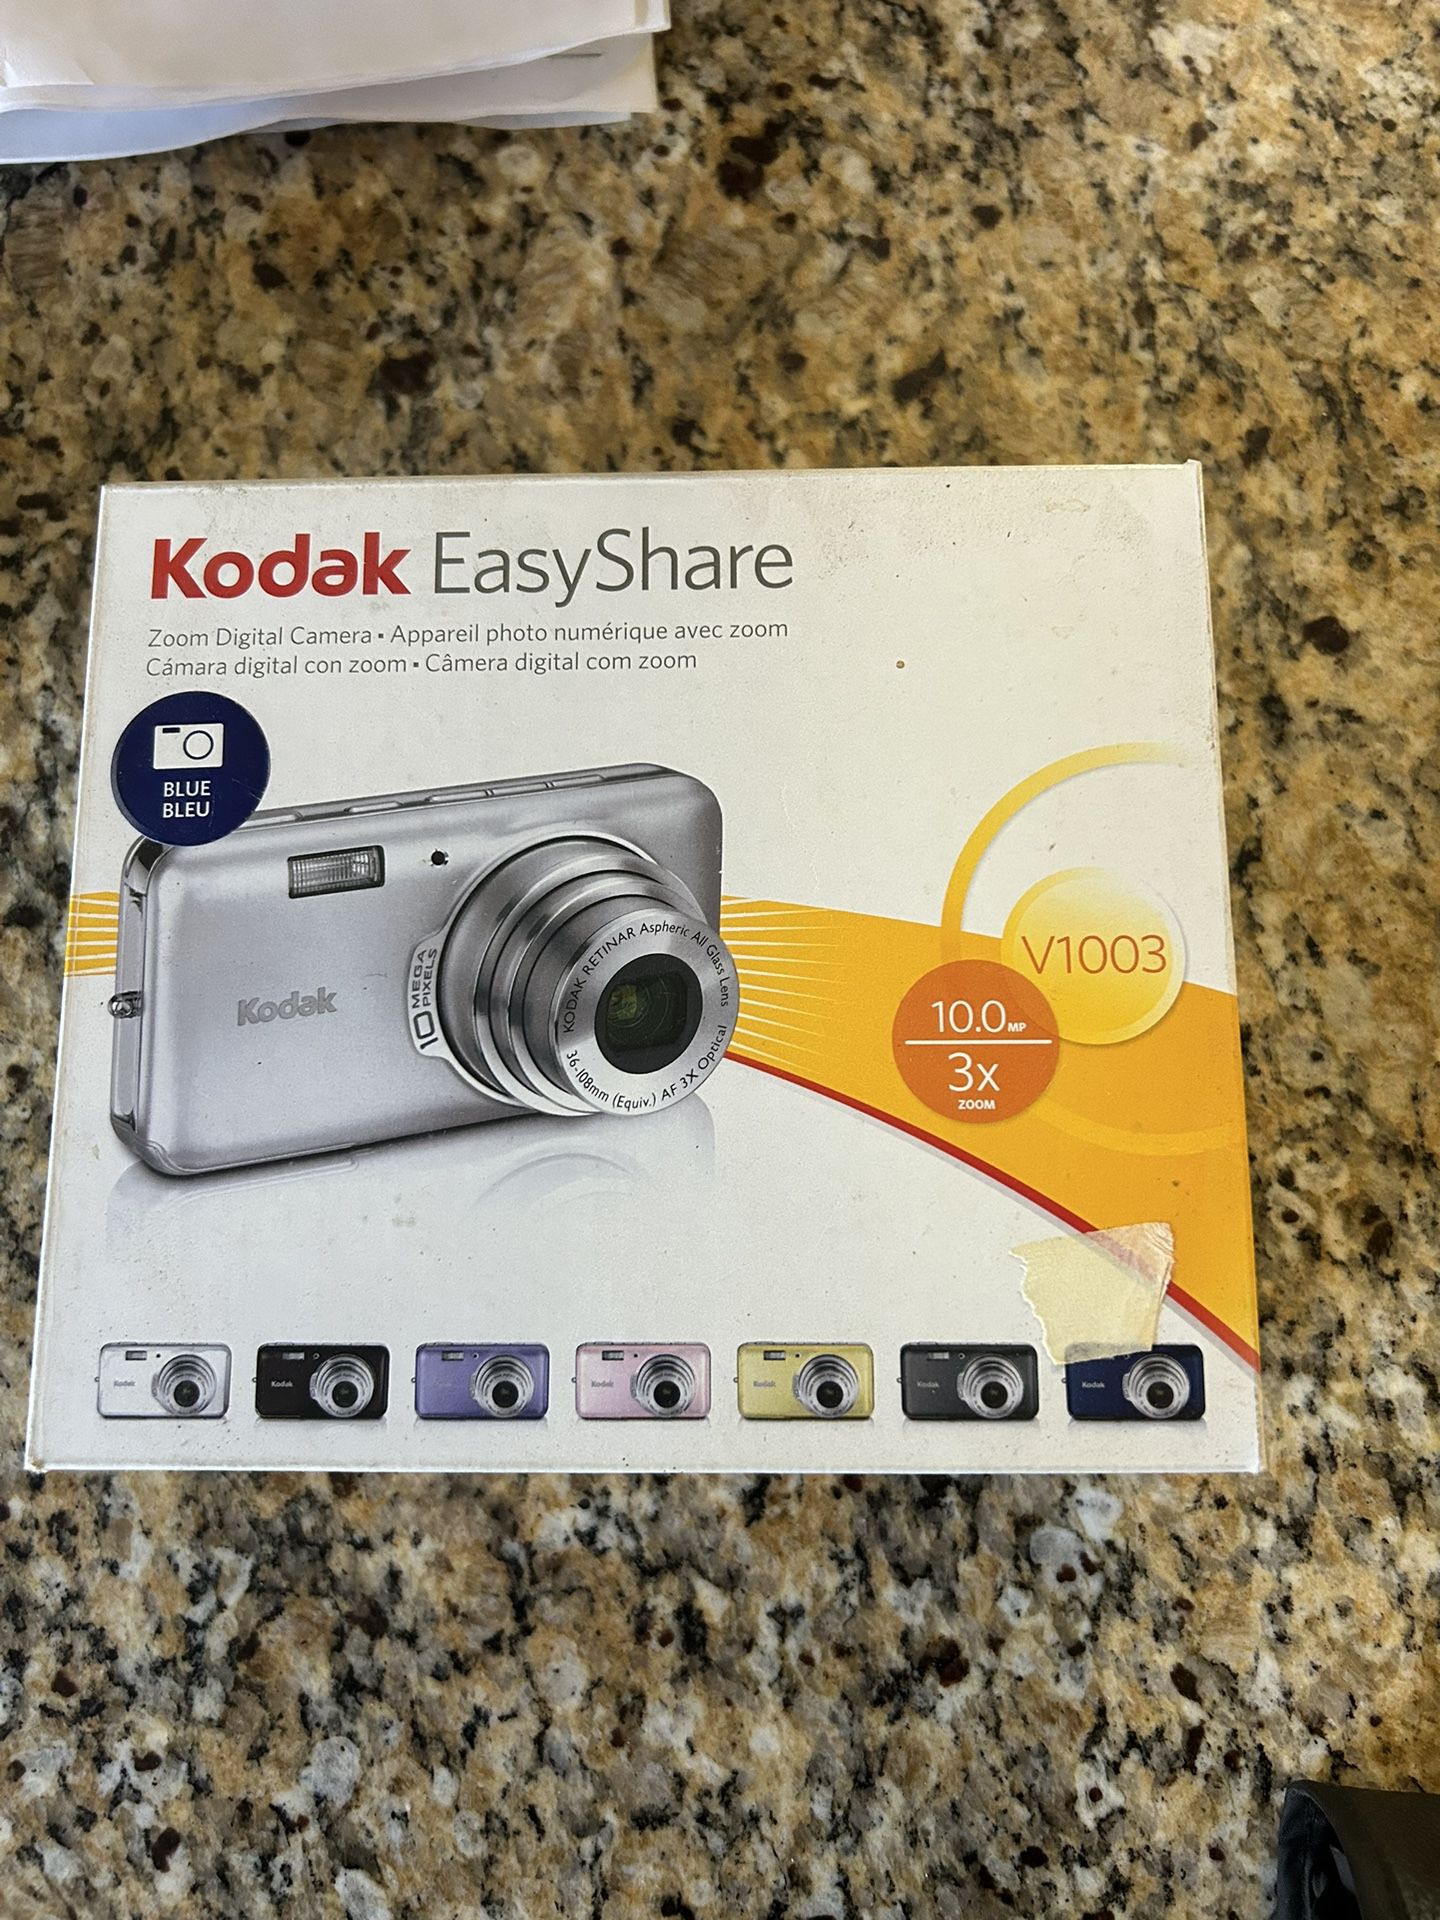 Kodak Digital Camera Easyshare V1003